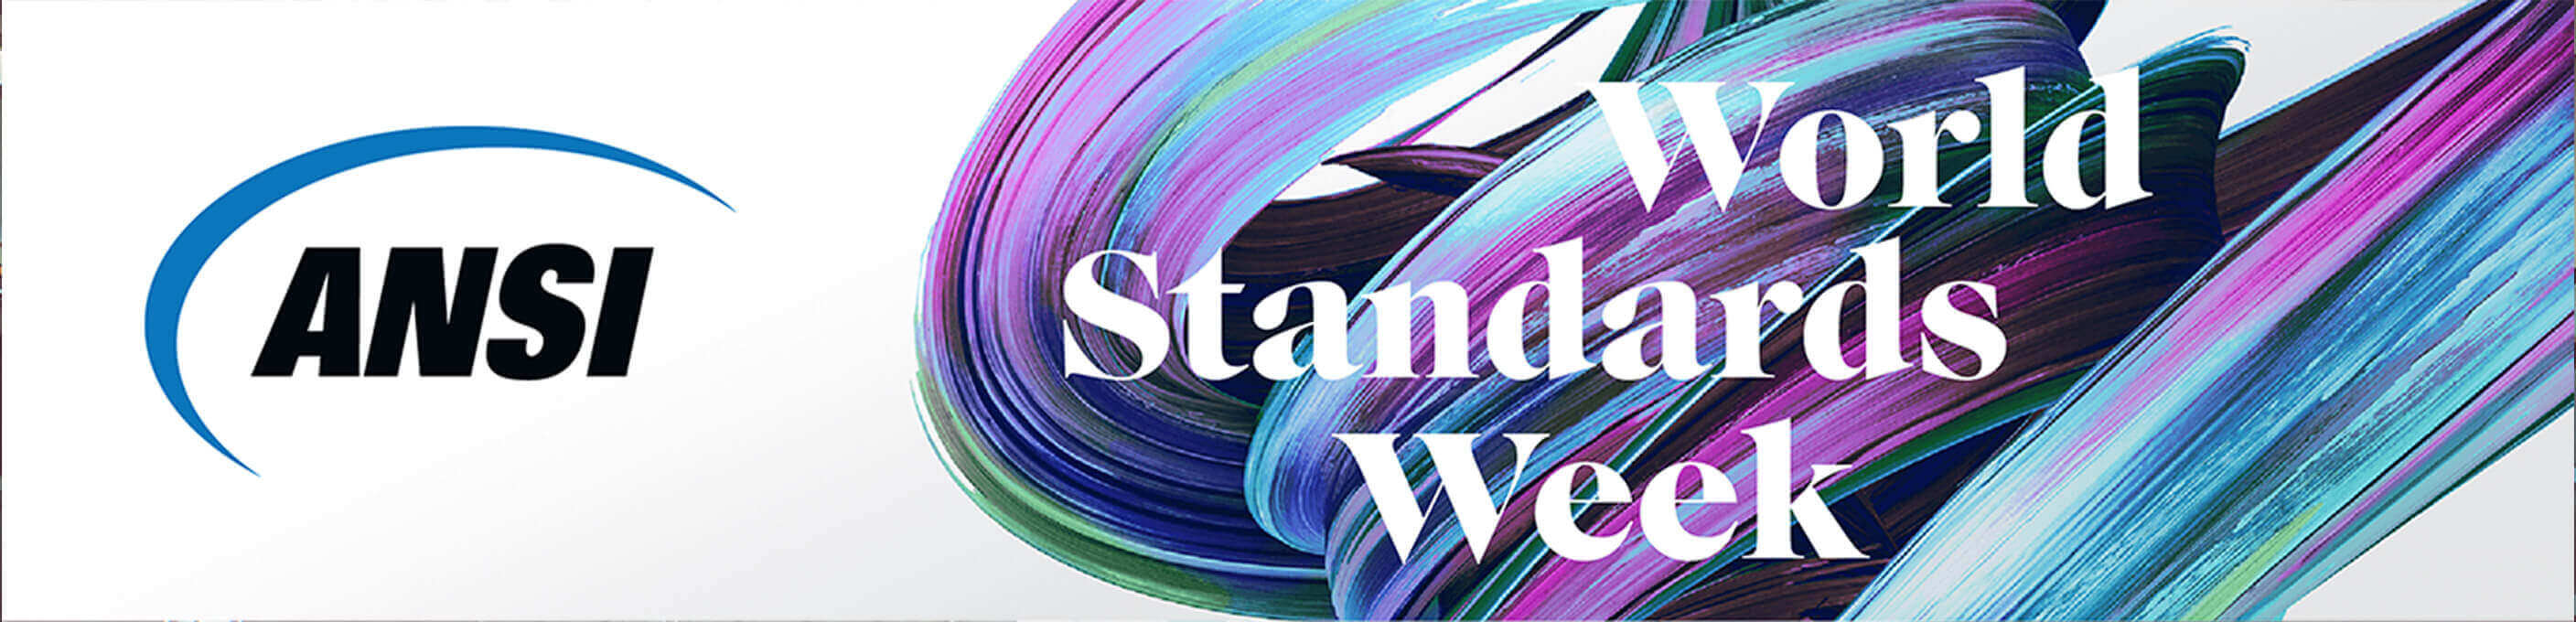 ANSI World Standards Week 2021 logo